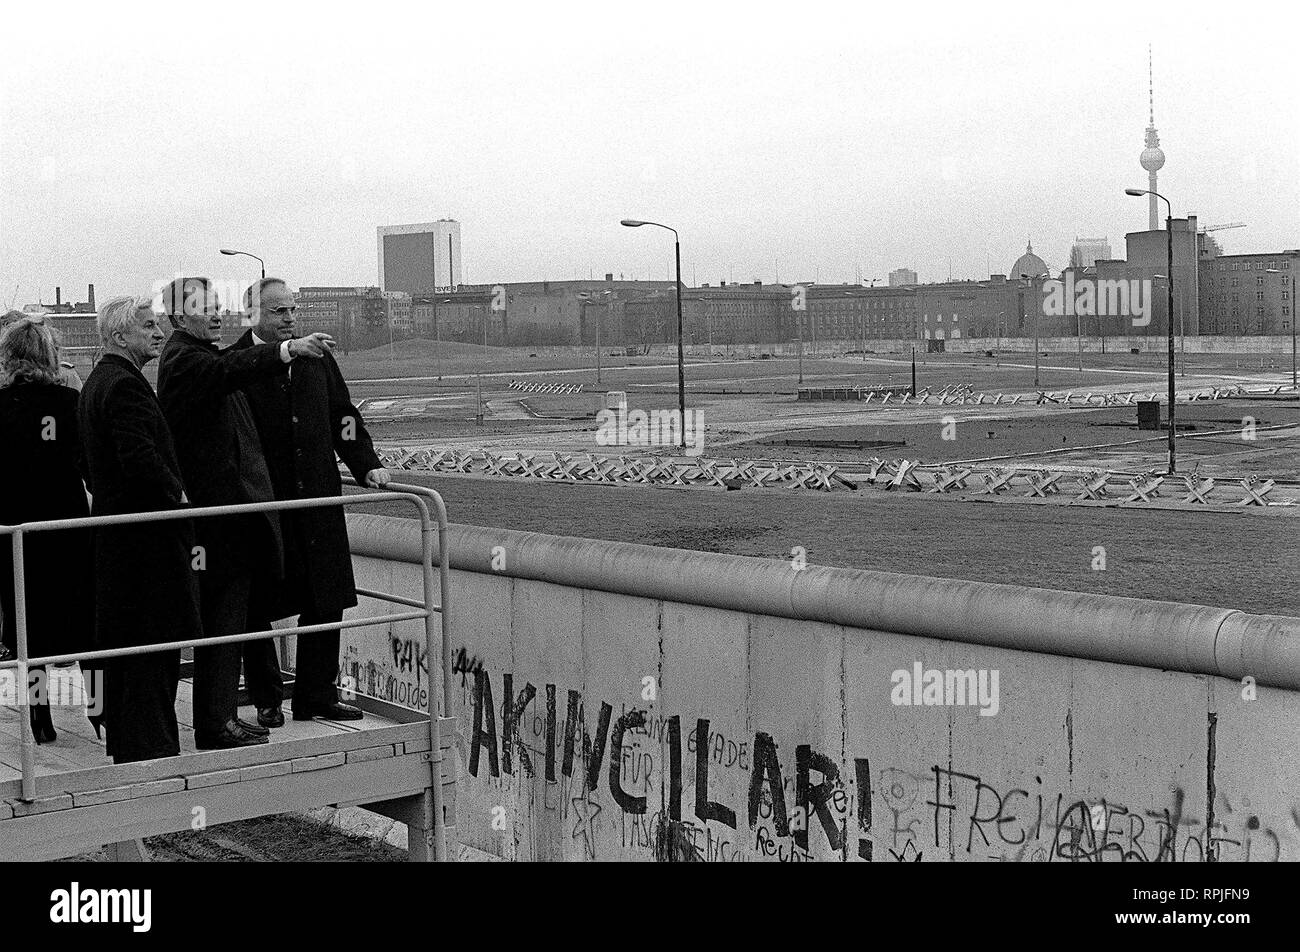 Vice President George Bush sieht über die Berliner Mauer in Ost-berlin während seiner Tour durch die Stadt. Er ist der regierende Bürgermeister von weizacker und Bundeskanzler Kohl begleitet. Stockfoto